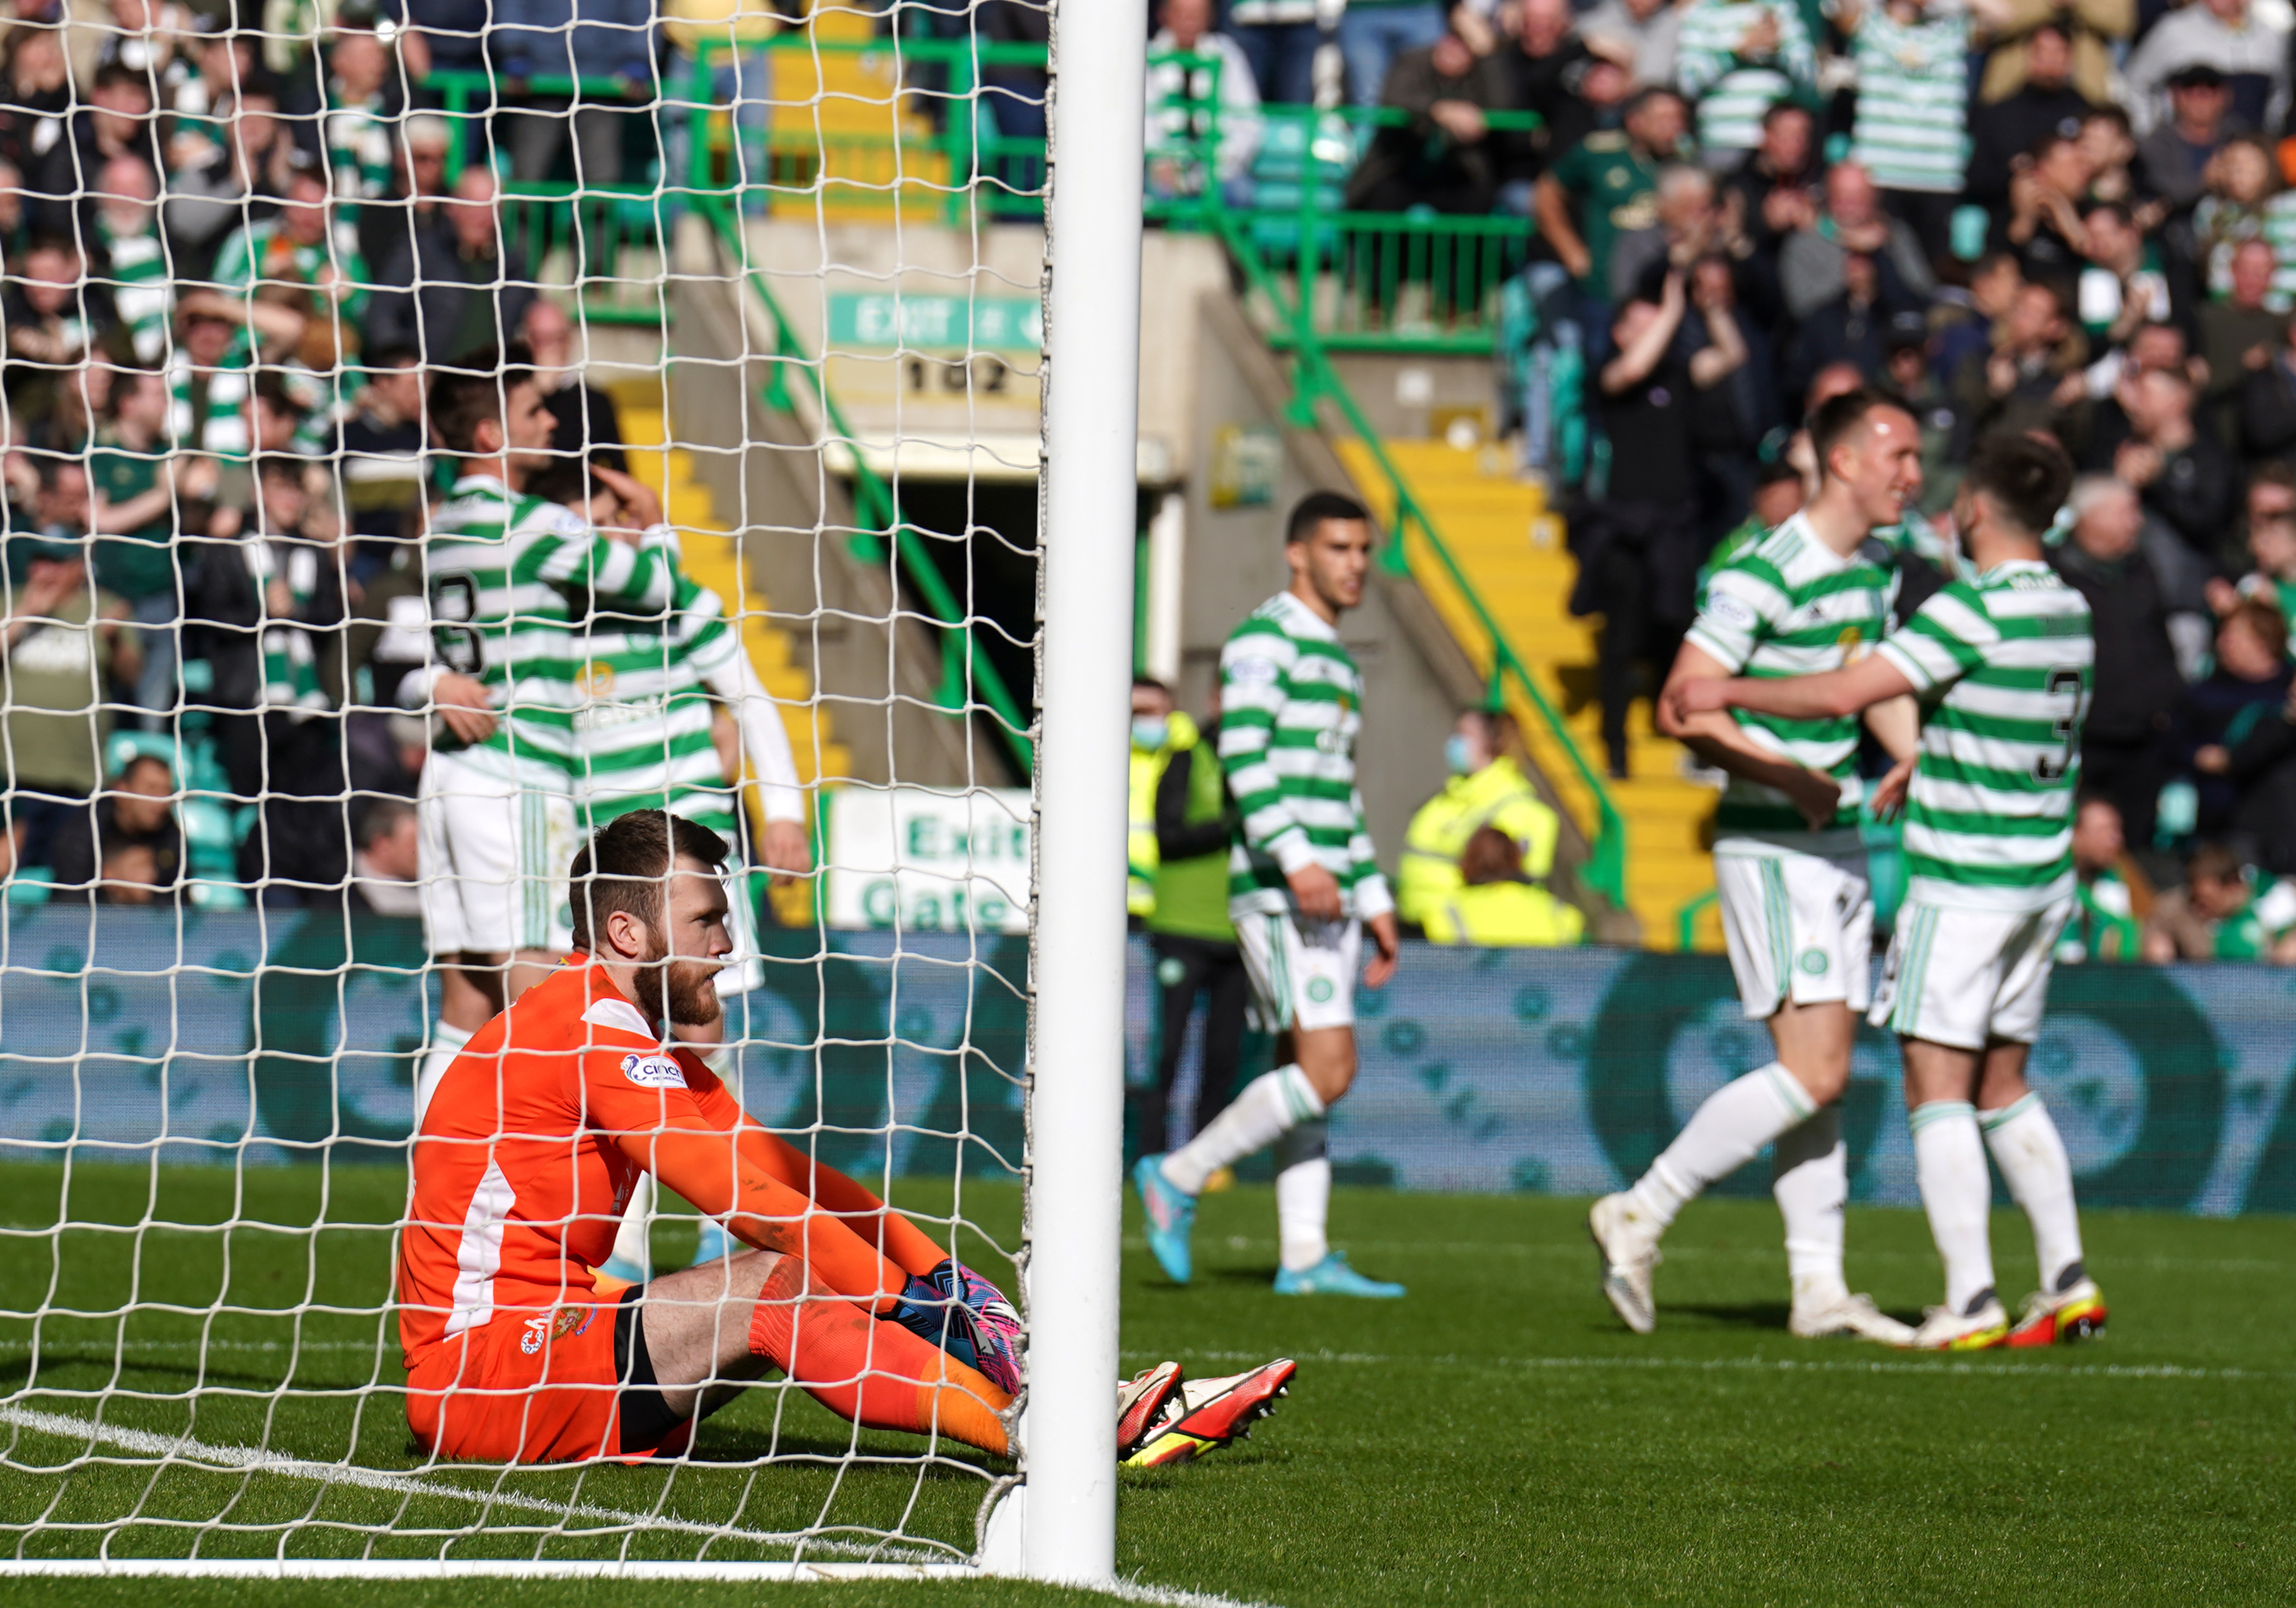 Celtic celebrate their goal against St Johnstone